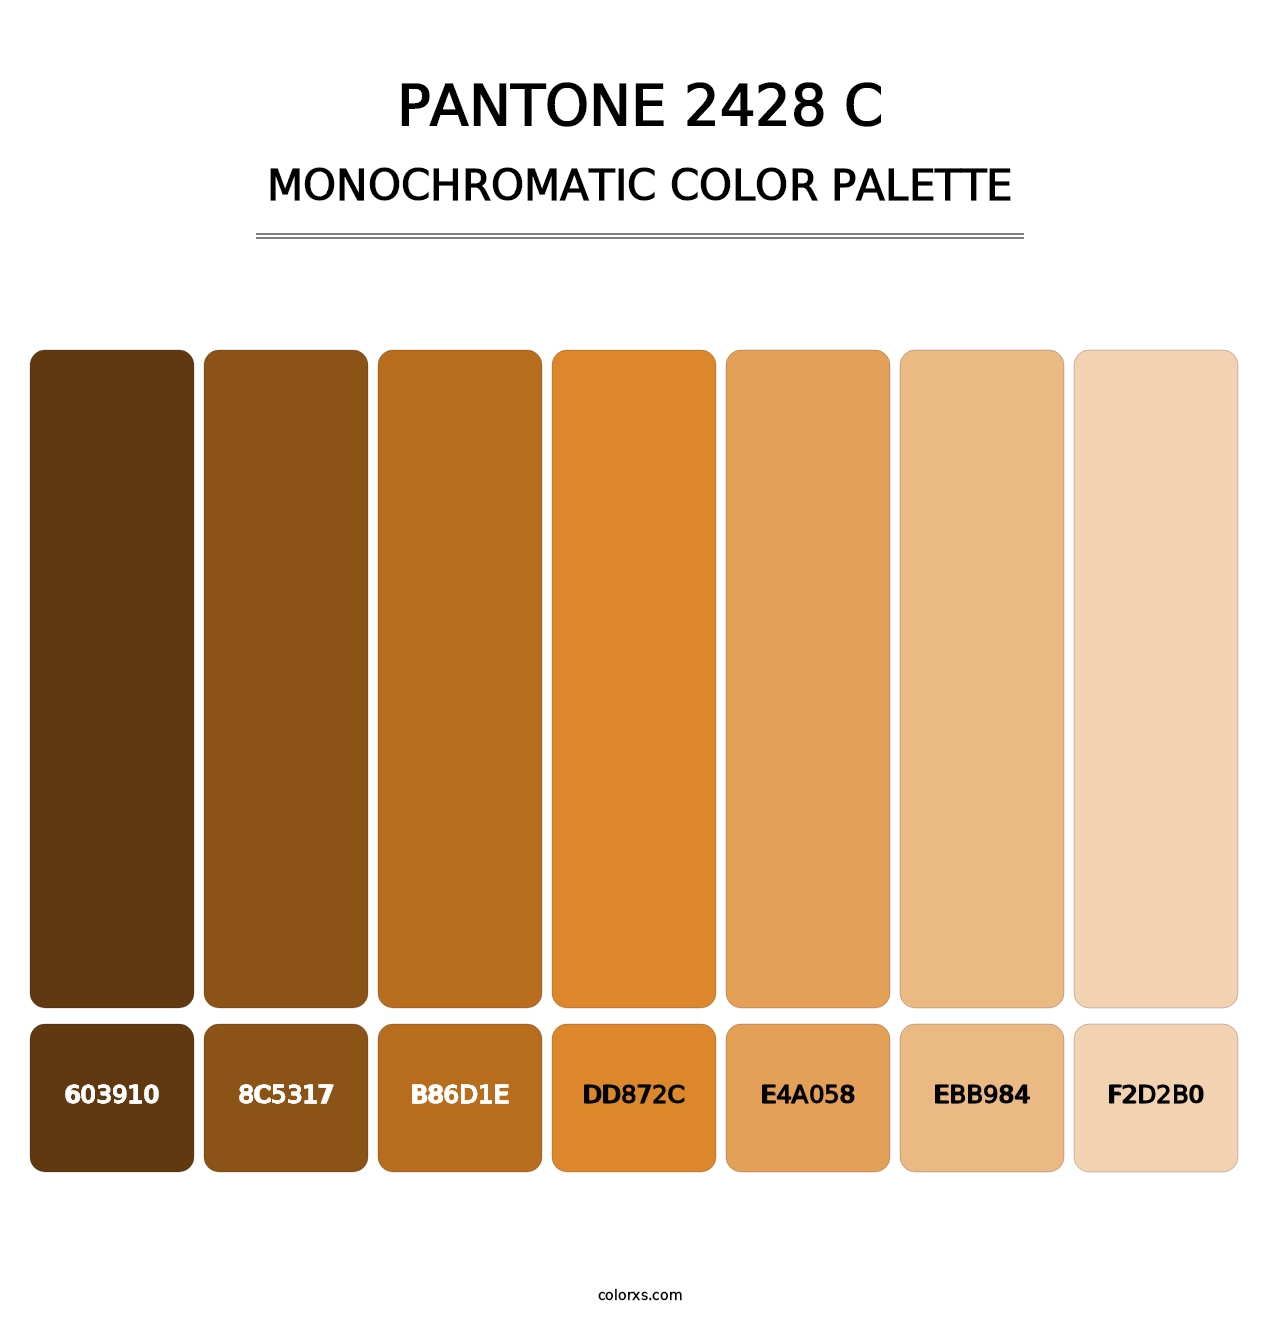 PANTONE 2428 C - Monochromatic Color Palette